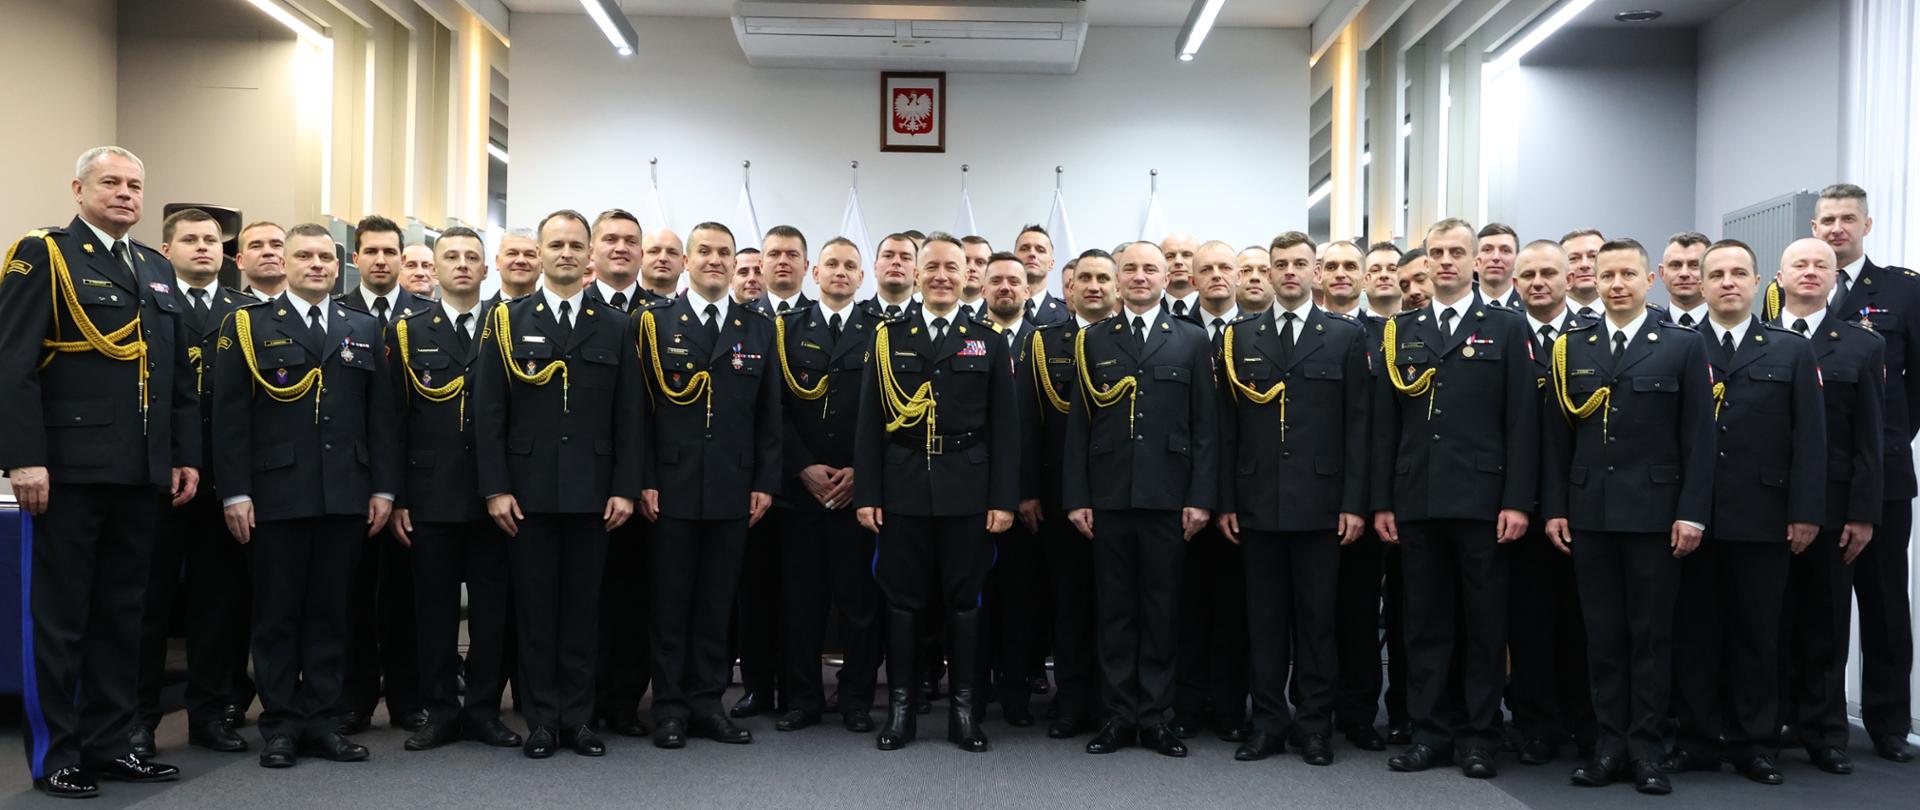 Grupowe zdjęcie strażaków z komendantem głównym PSP, wszyscy w mundurach galowych